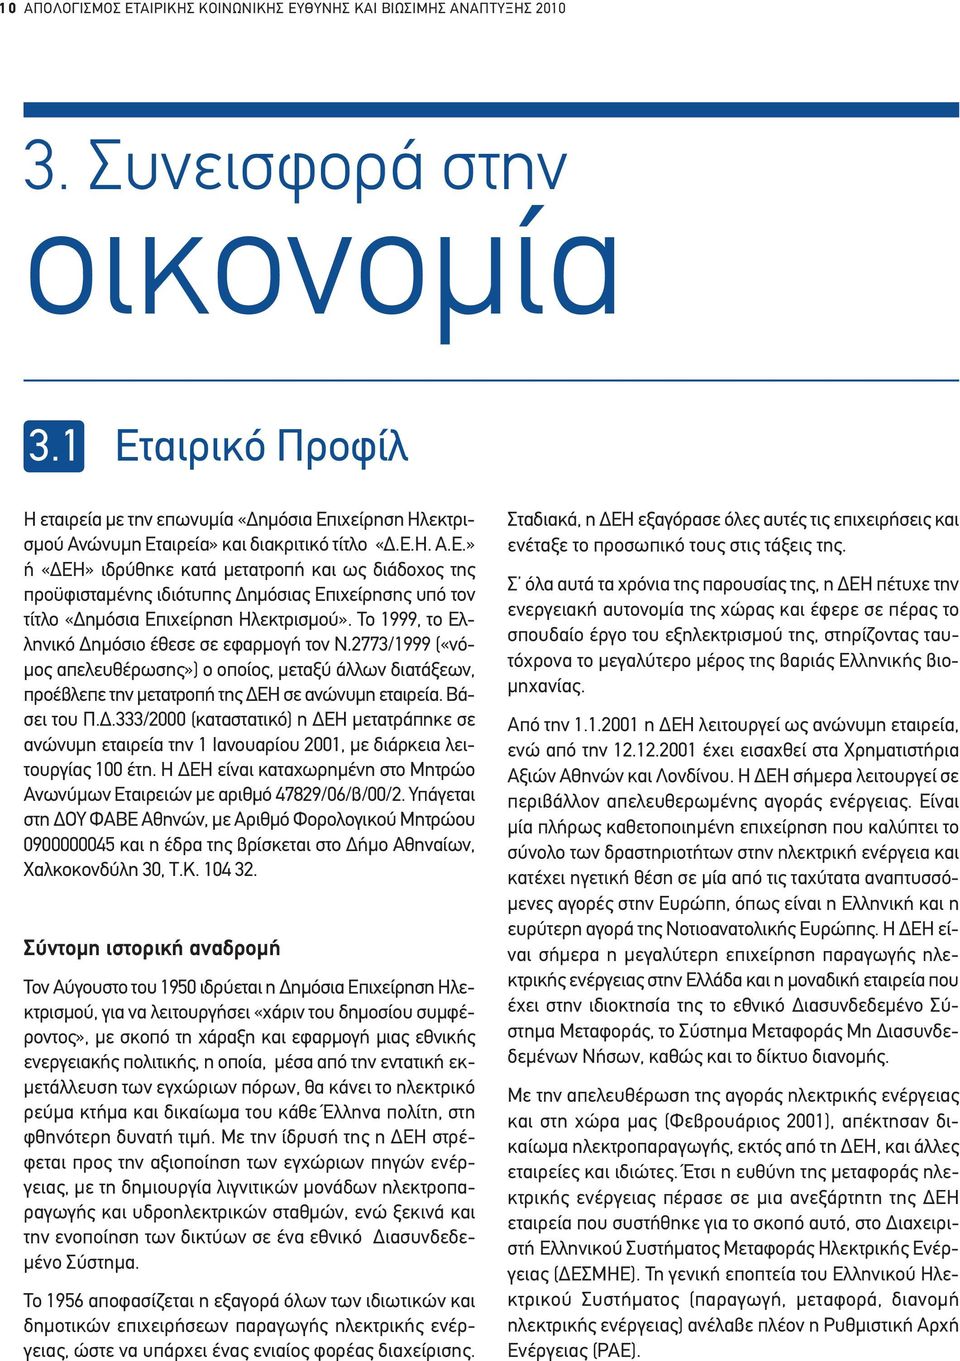 Το 1999, το Ελληνικό ηµόσιο έθεσε σε εφαρµογή τον Ν.2773/1999 («νό- µος απελευθέρωσης») ο οποίος, µεταξύ άλλων διατάξεων, προέβλεπε την µετατροπή της ΕΗ σε ανώνυµη εταιρεία. Βάσει του Π.